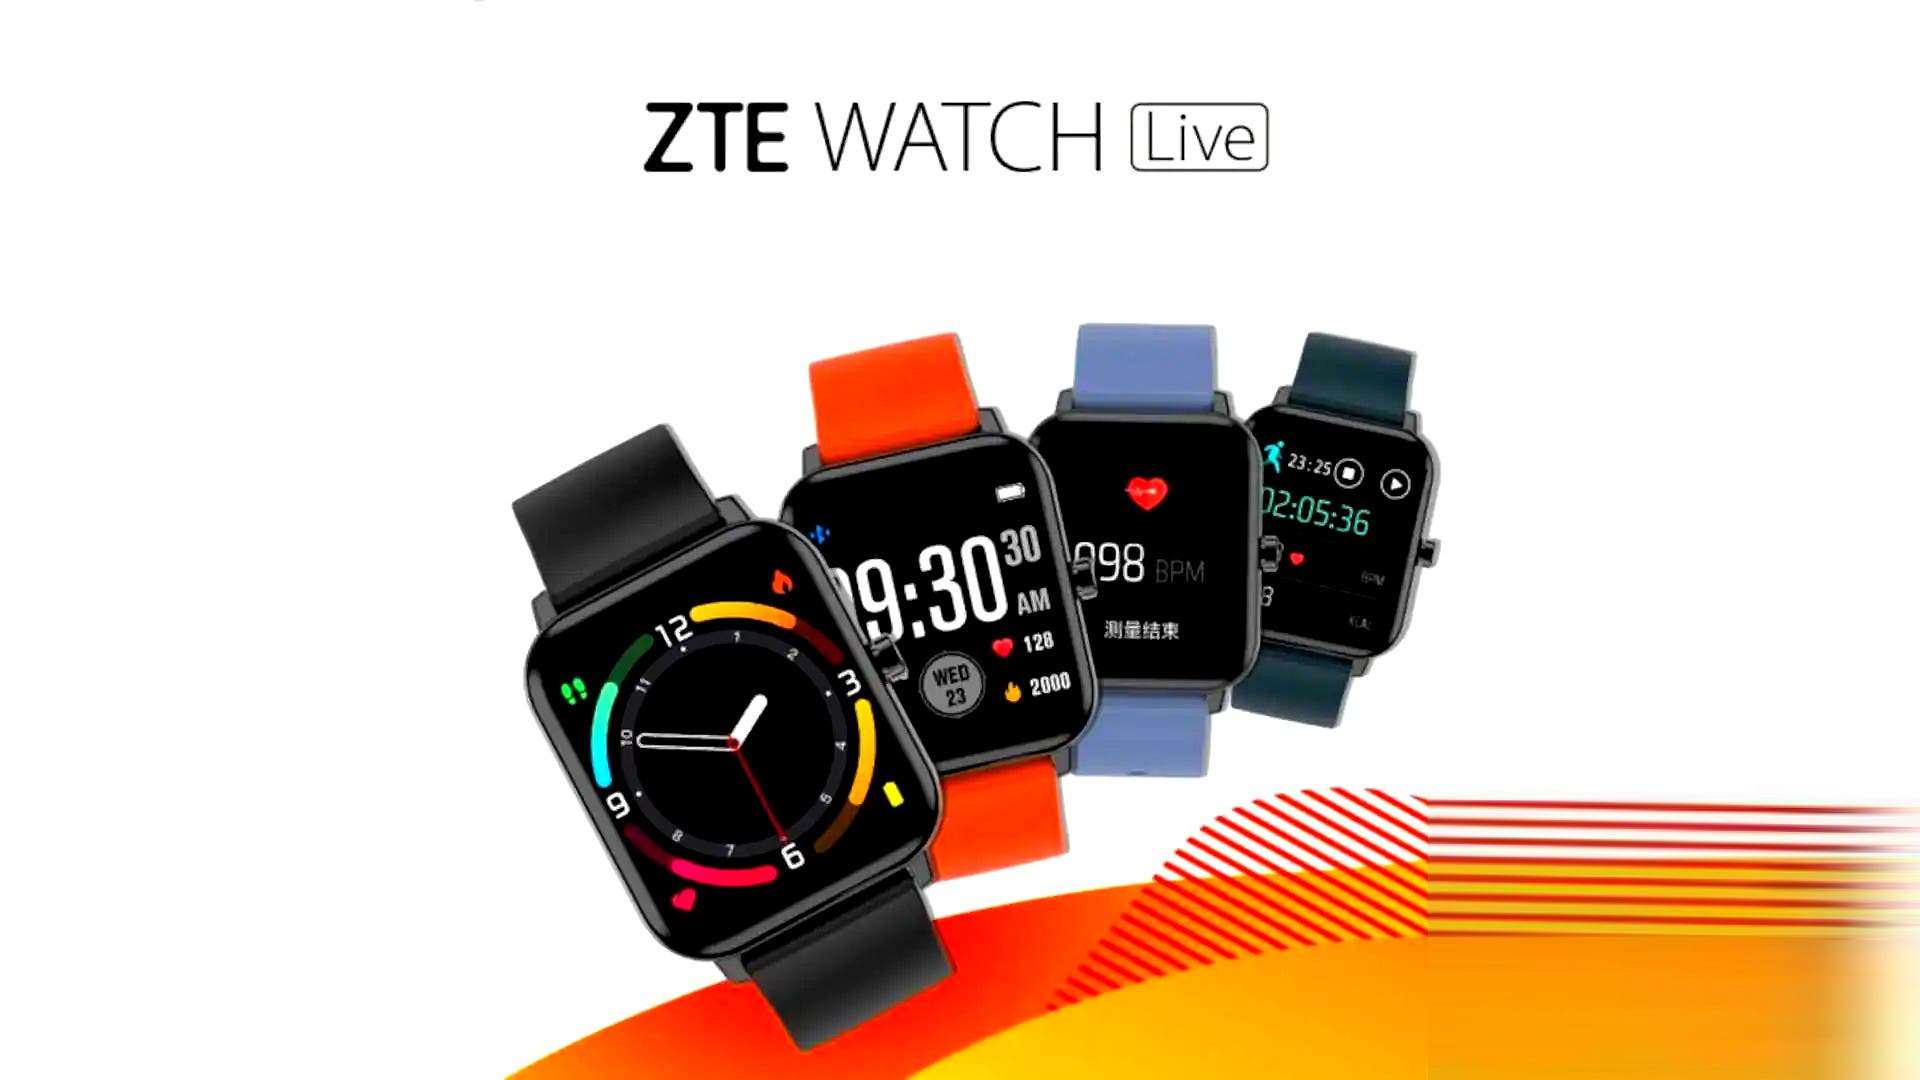 ZTE Watch Live